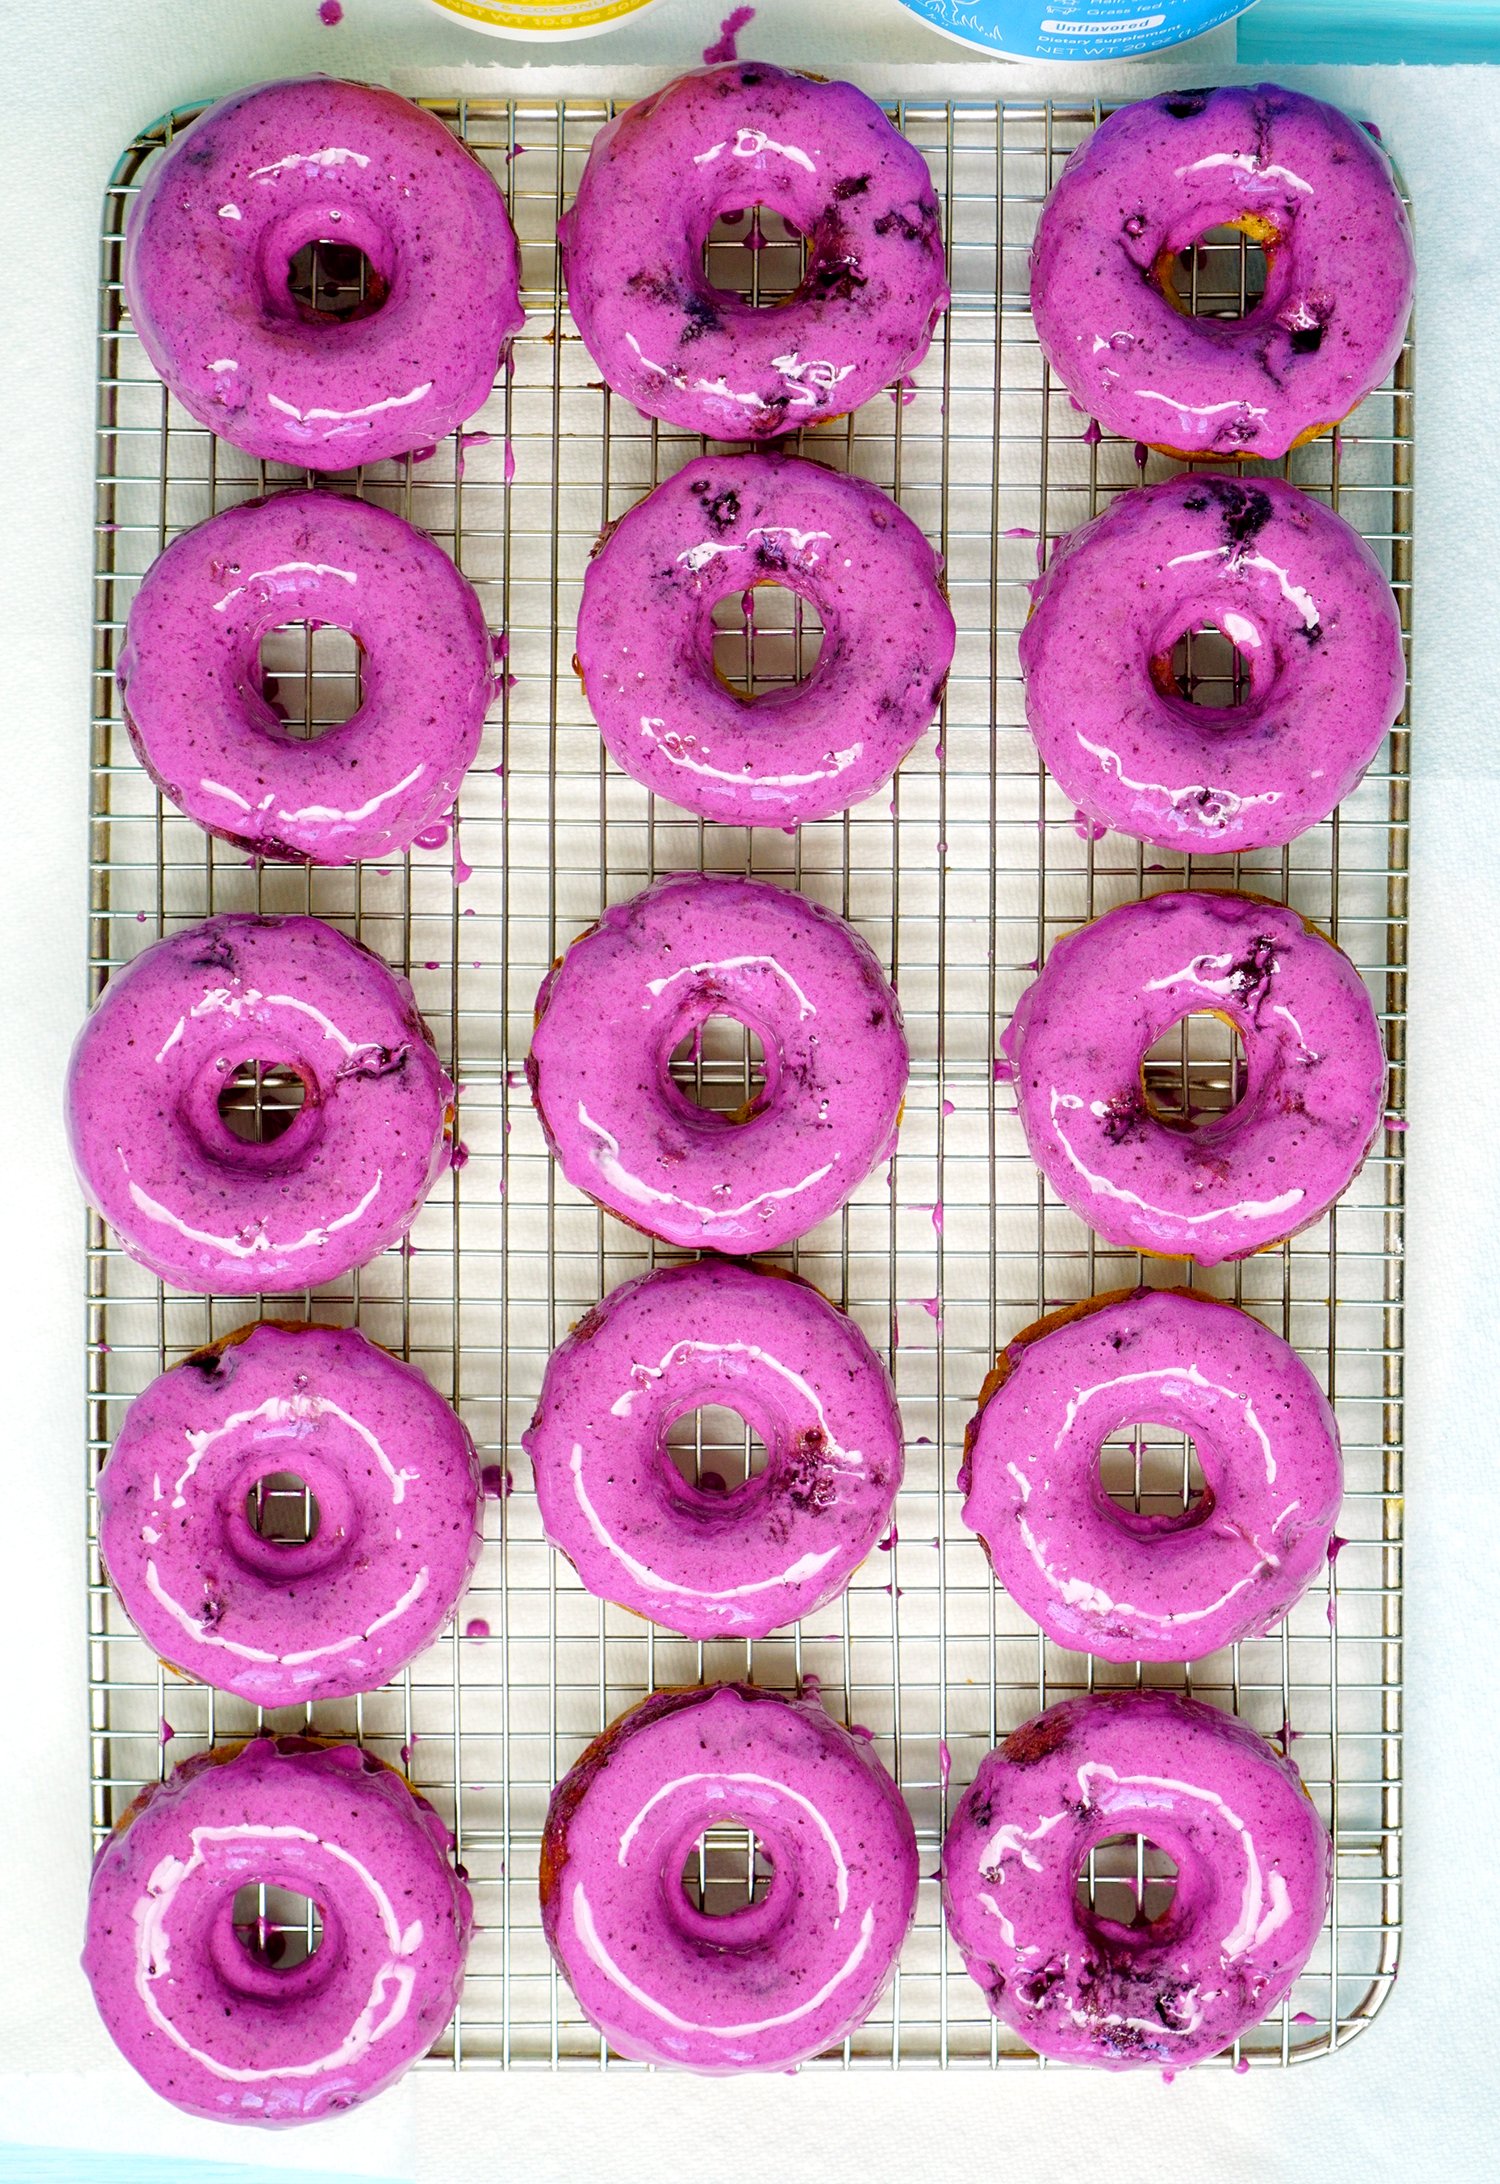 lemon blueberry donuts with glaze